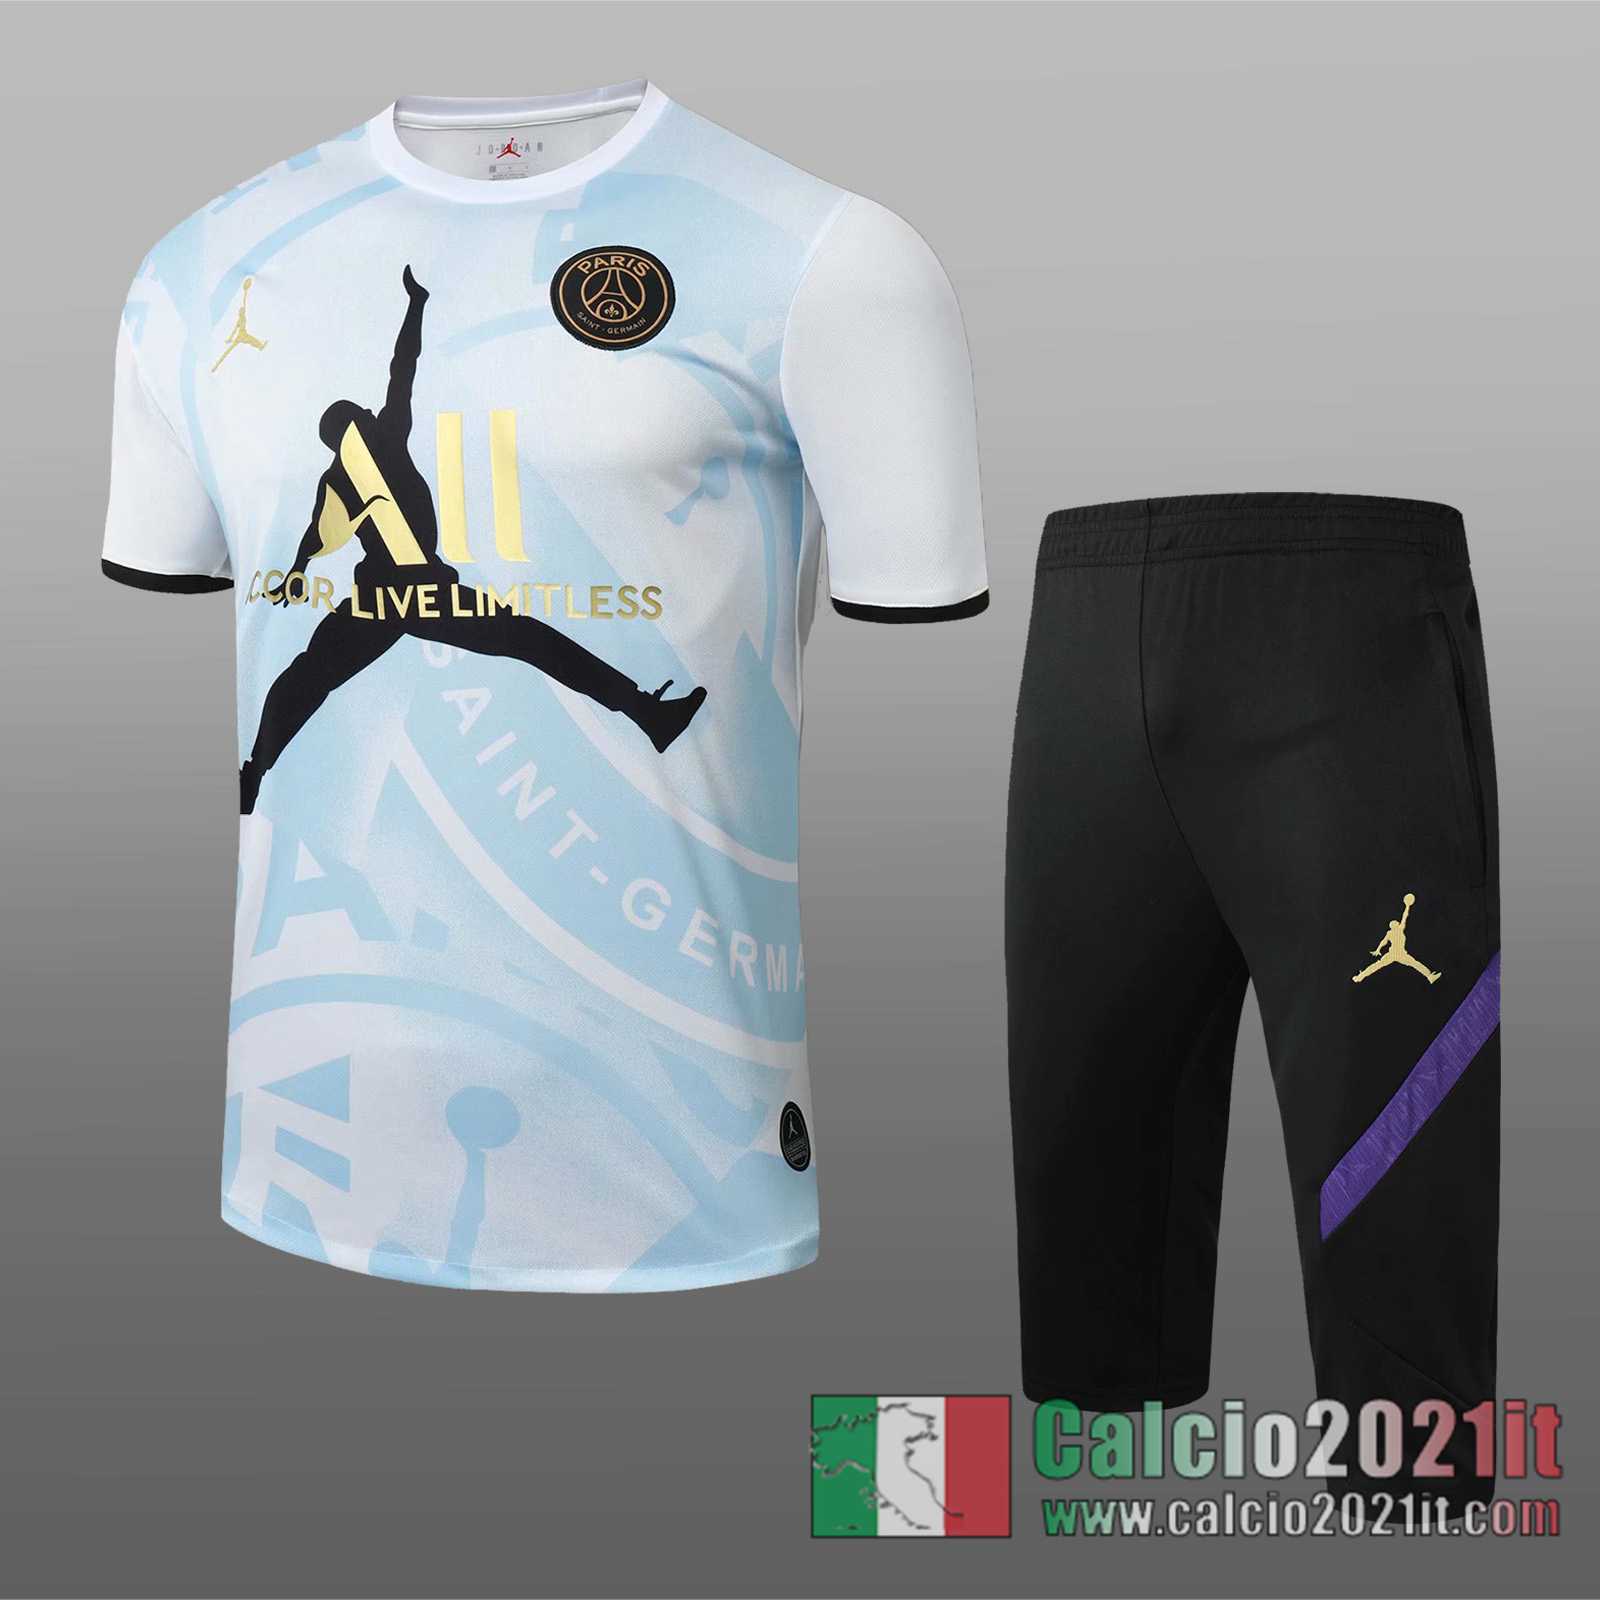 PSG Jordan Magliette Tuta Calcio Bianco blu Stampa tampografica 2020 2021 T37